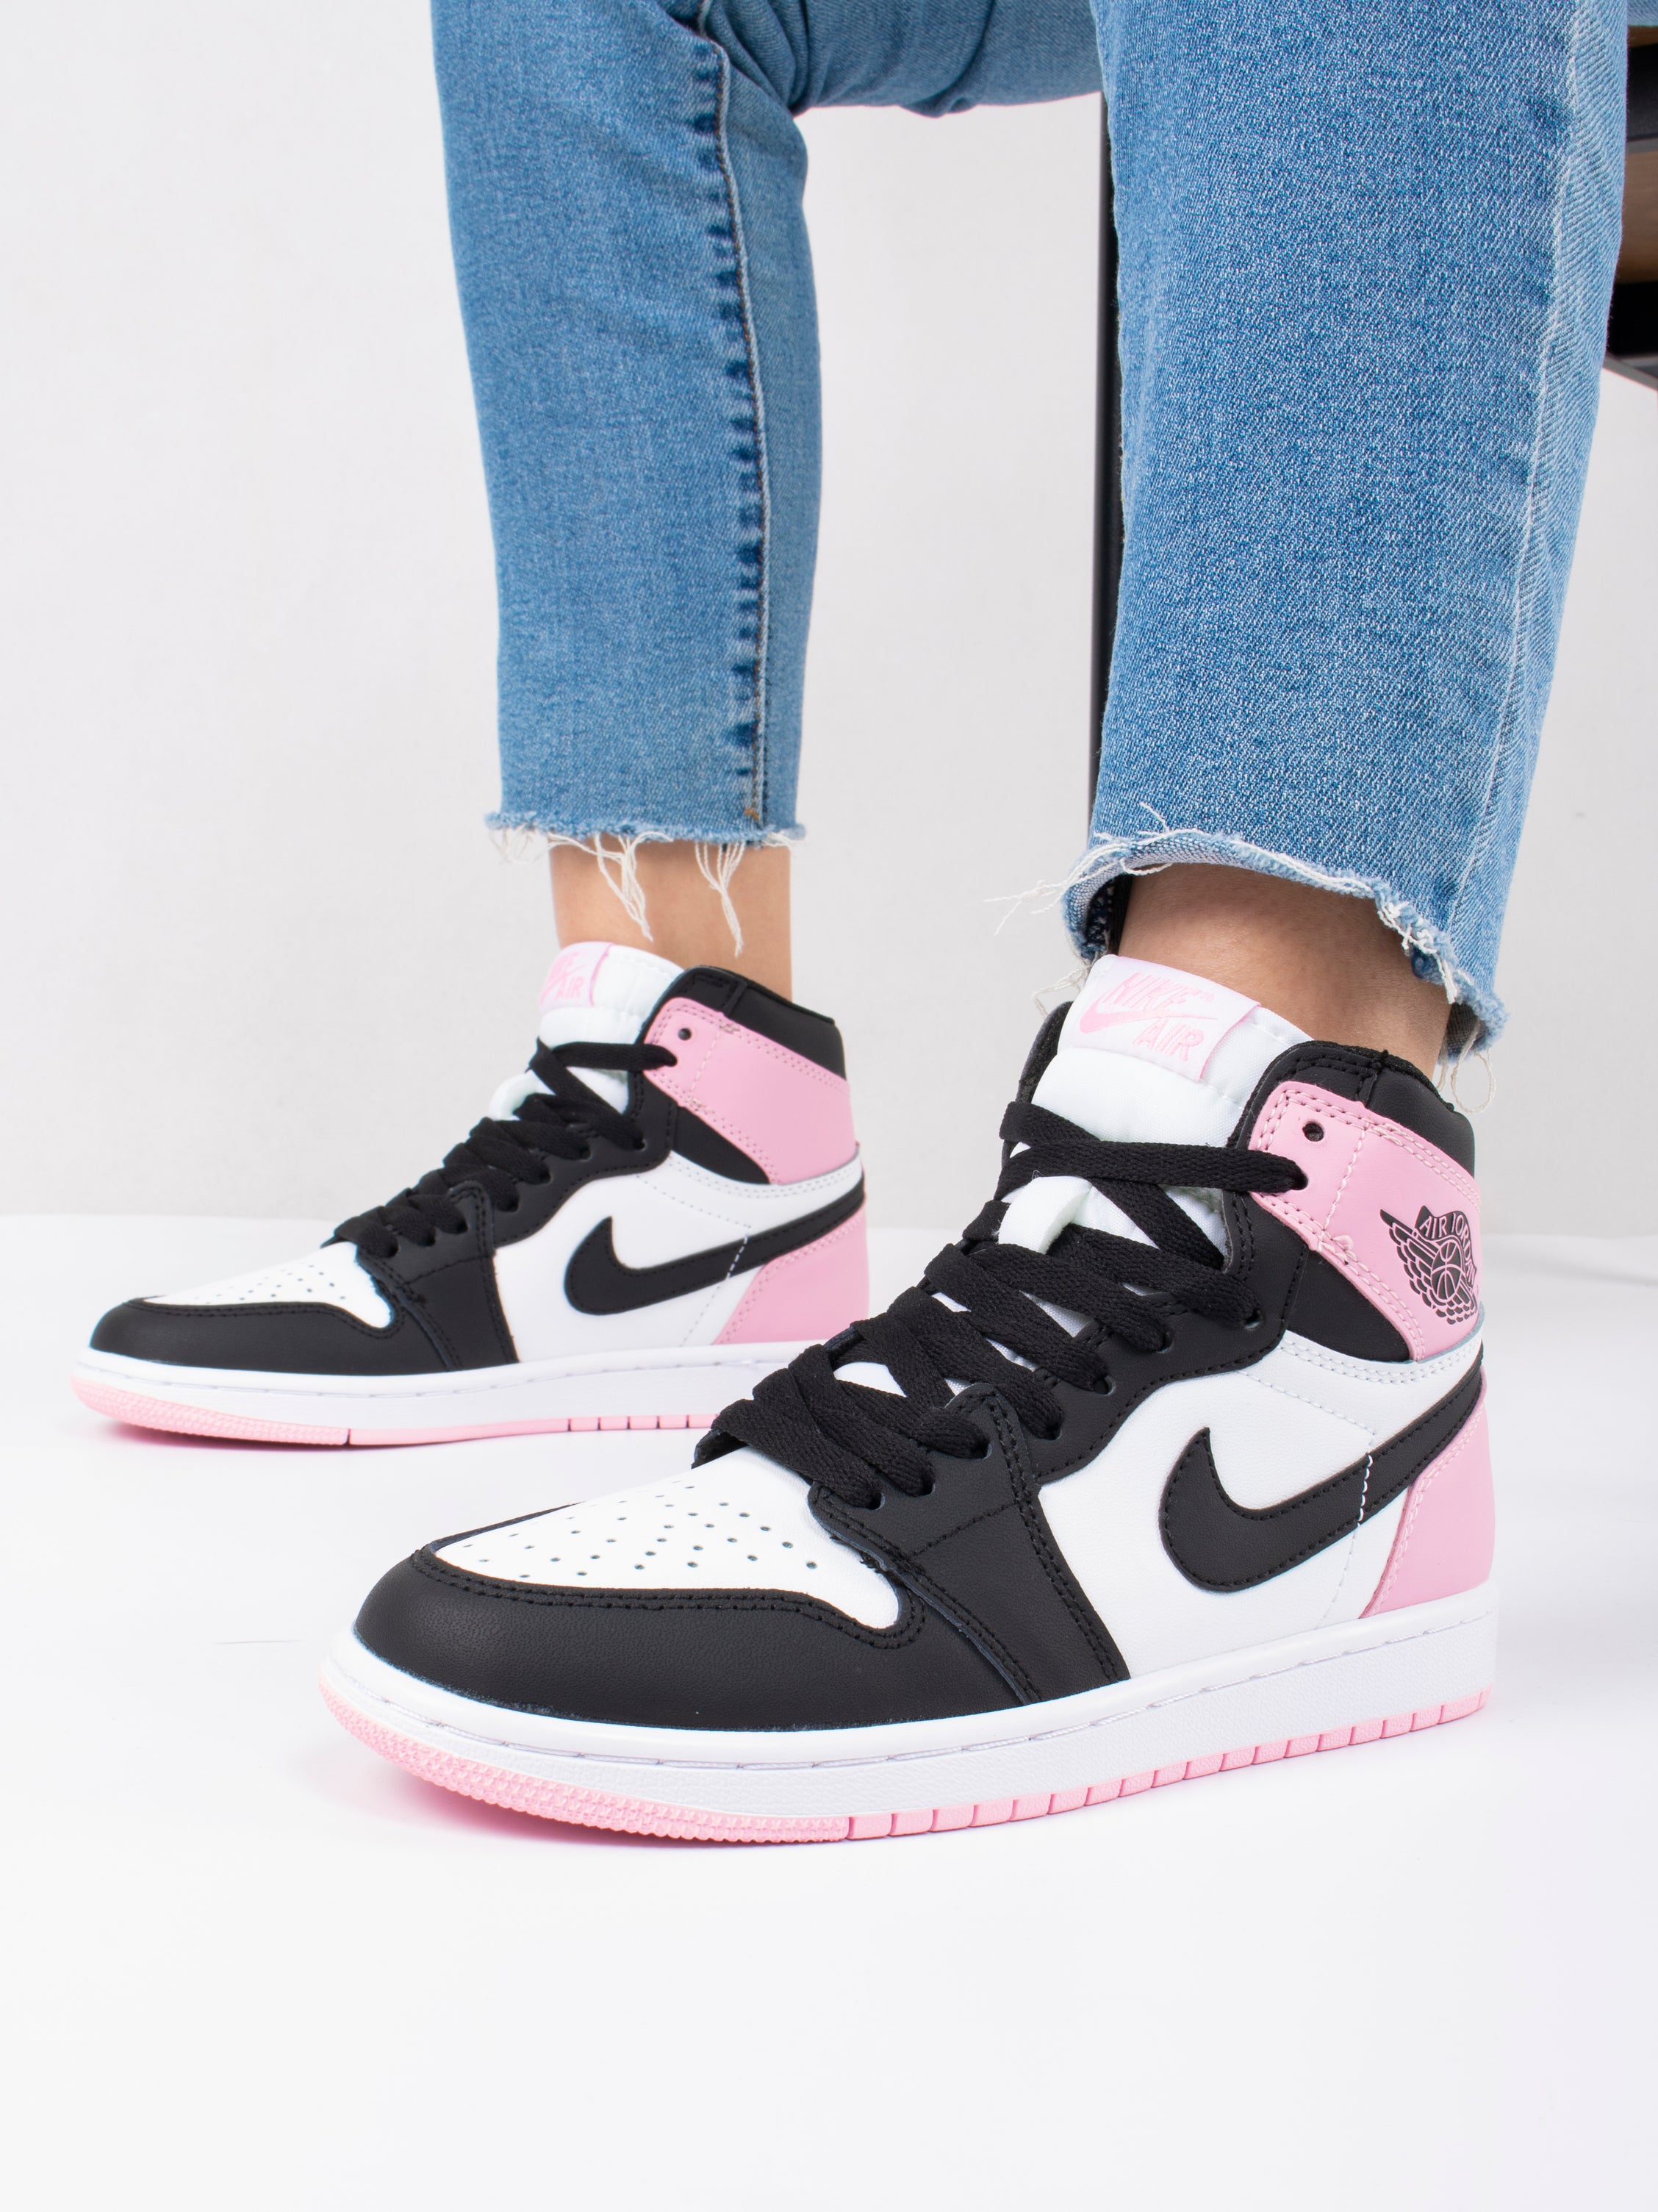 Nike Air Jordan Retro Black/White/Pink